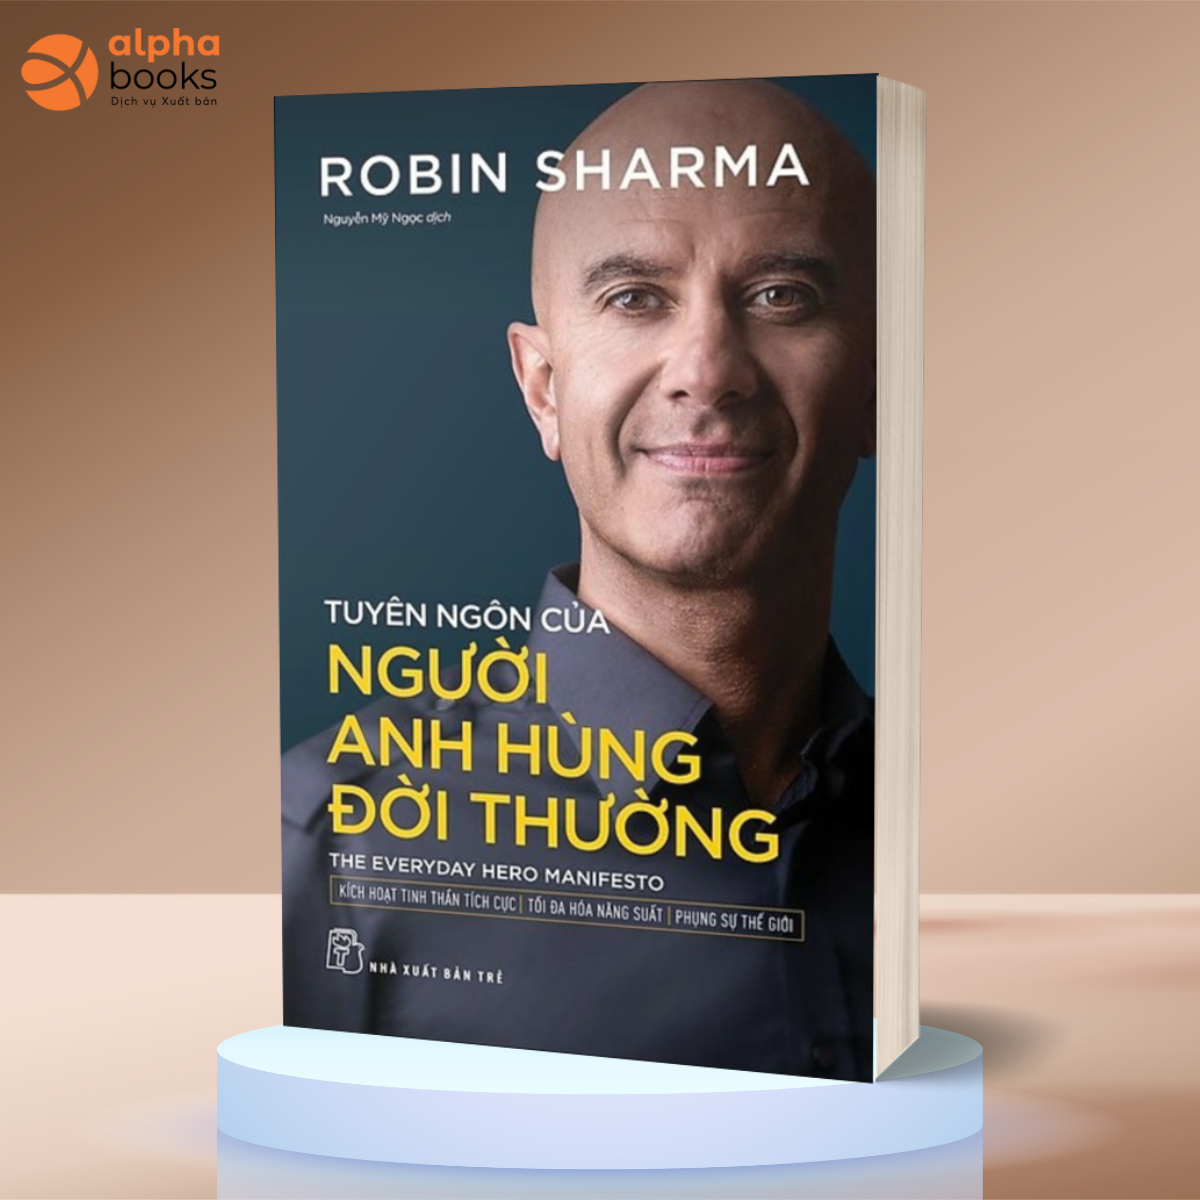 TUYÊN NGÔN CỦA NGƯỜI ANH HÙNG ĐỜI THƯỜNG - Robin Sharma (bìa mềm)